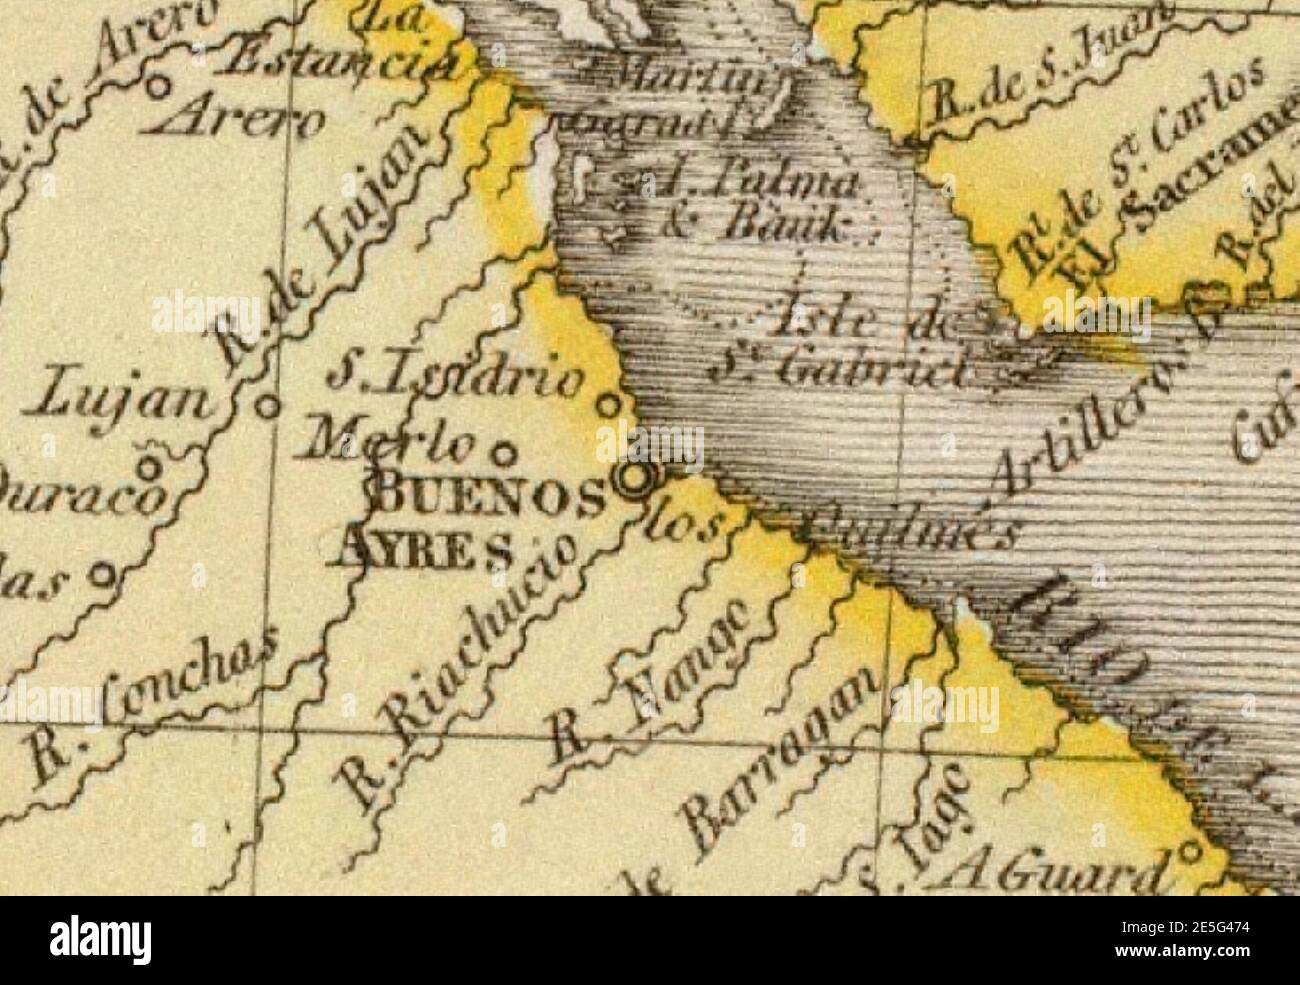 Río de la Plata. Detalle de un mapa de las Provincias Unidas en 1812 Stock Photo